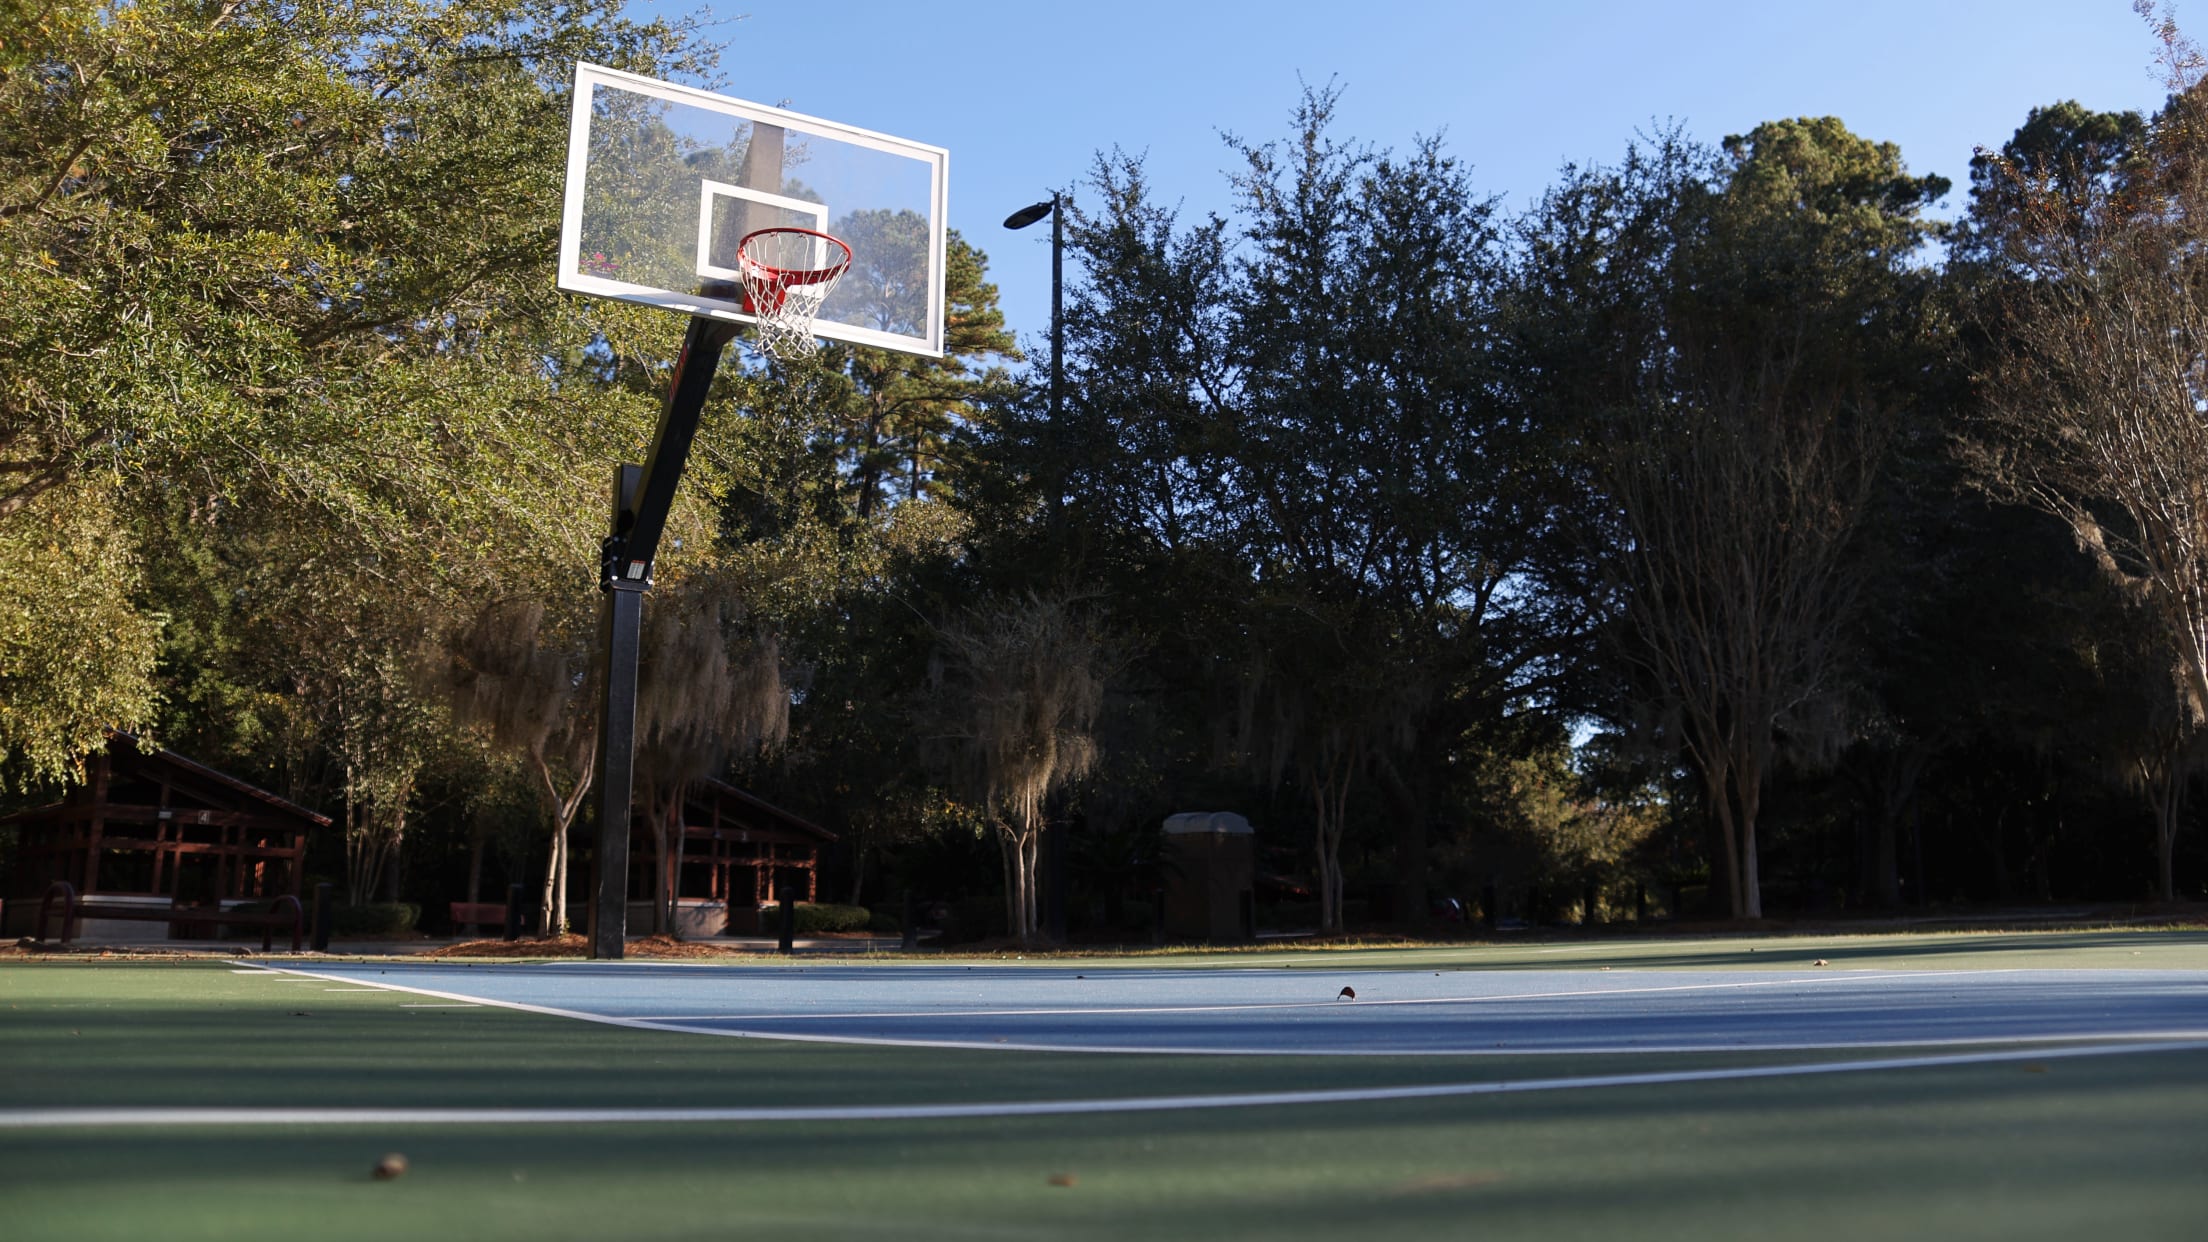 A basketball court at a local park in Valdosta, GA.